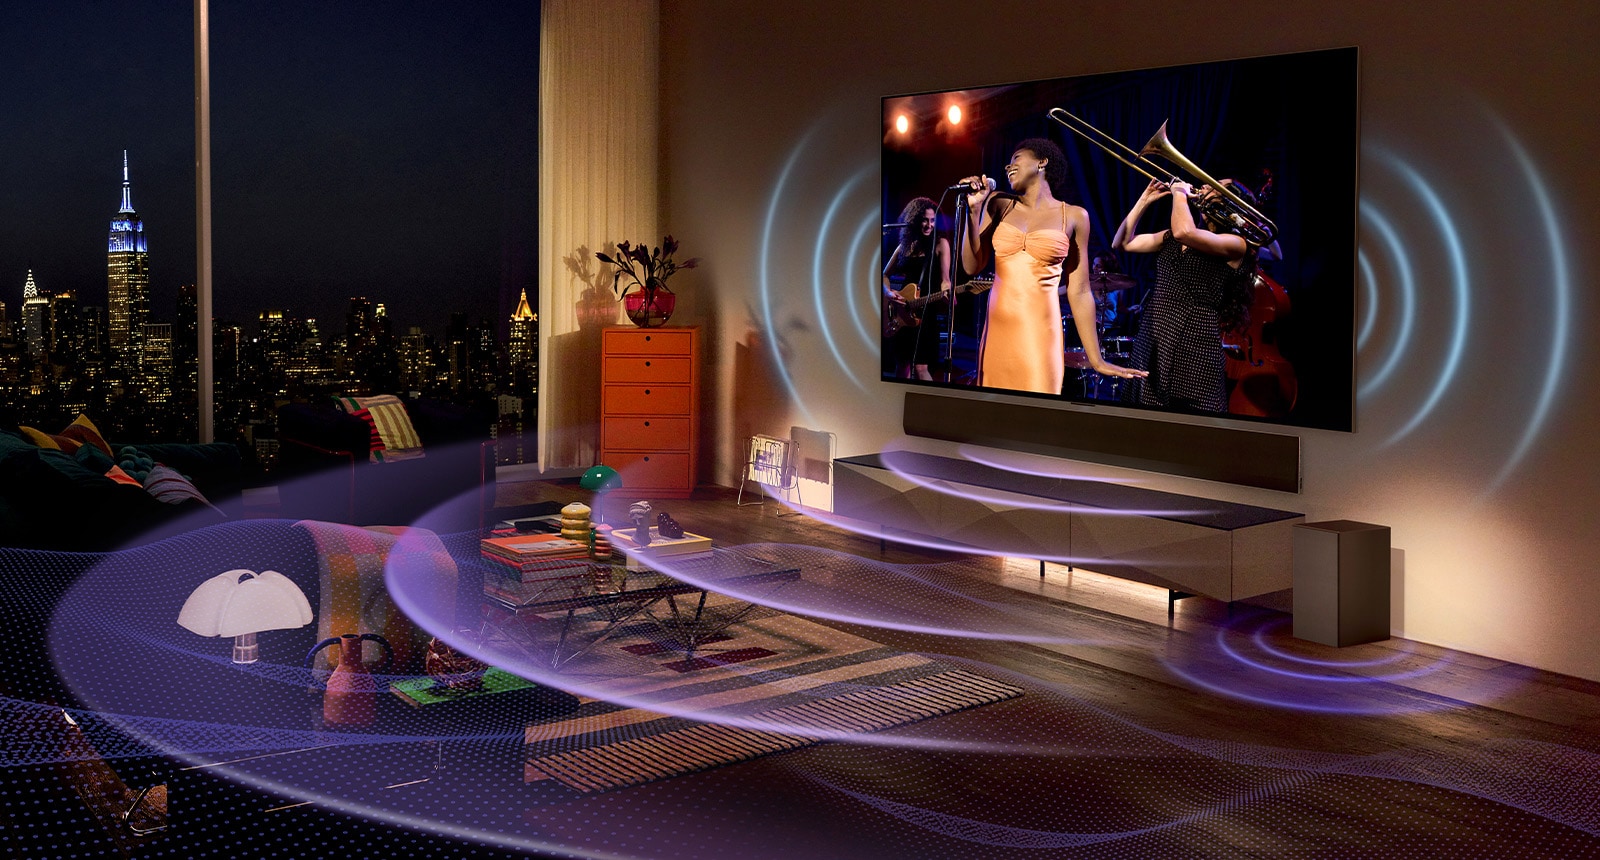 Slika televizorja LG OLED v sobi, ki prikazuje glasbeni koncert.  Modre ukrivljene črte, ki predstavljajo zvok televizorja, in vijolične ukrivljene črte, ki izražajo zvok soundbara, zapolnjujejo sobo.